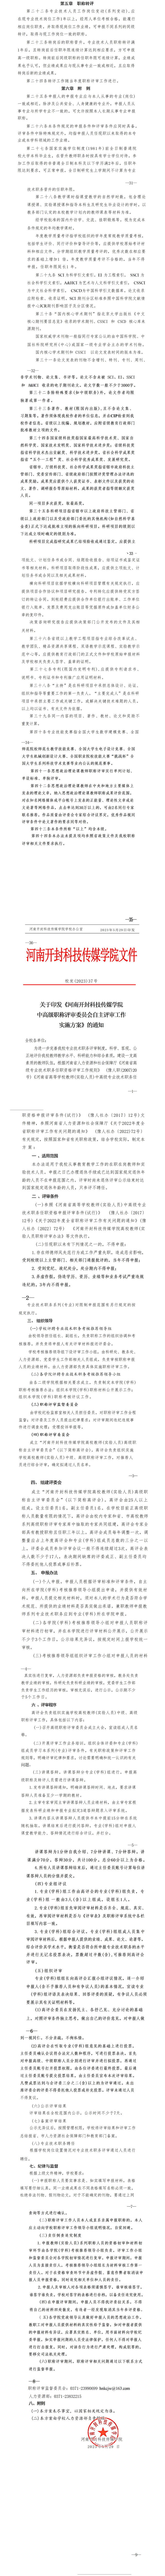 澳网官方网站·「中国」官方网站《高校教师（实验人员）职称评审办法》、《自主评审工作实施方案》_03